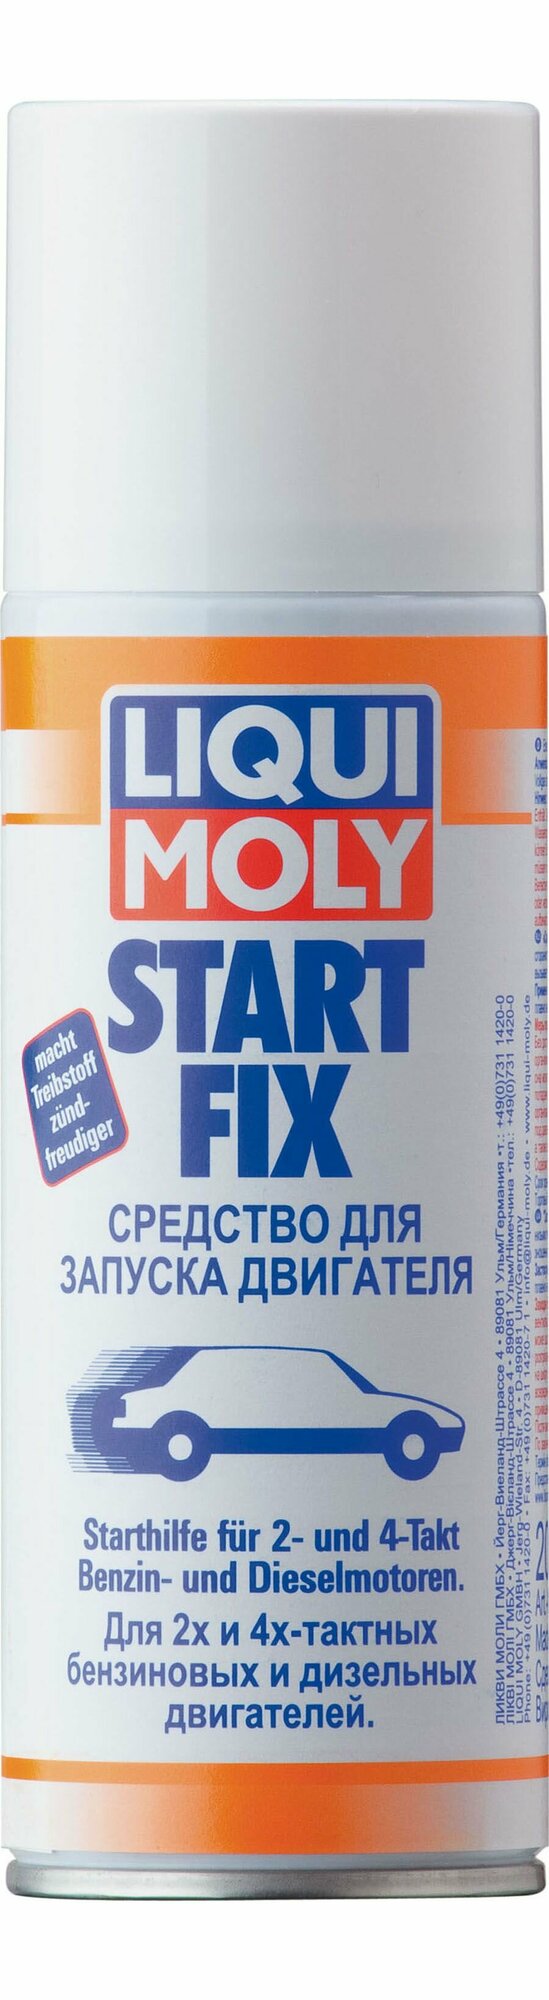 Технические жидкости и масла Liqui Moly - фото №10